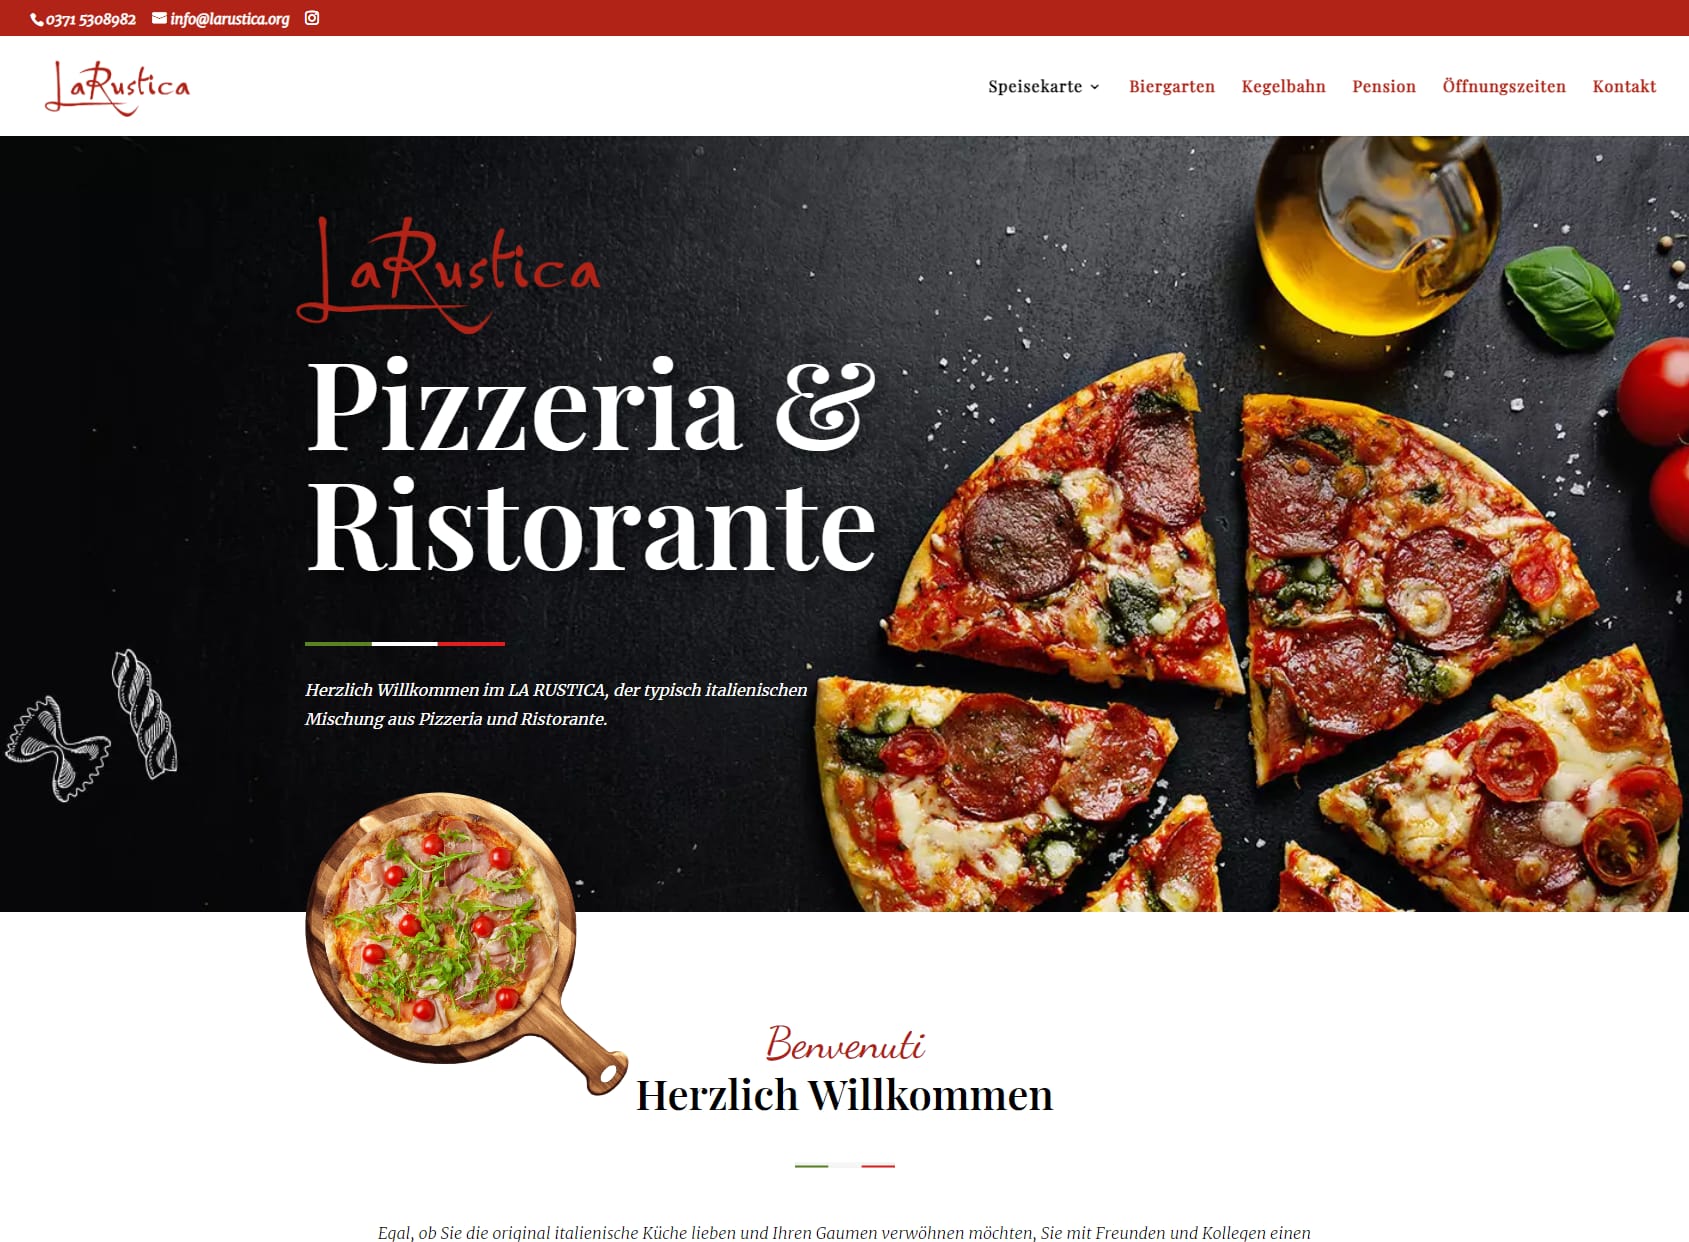 La Rustica Pizzeria & Ristorante - Giampiero Pelli